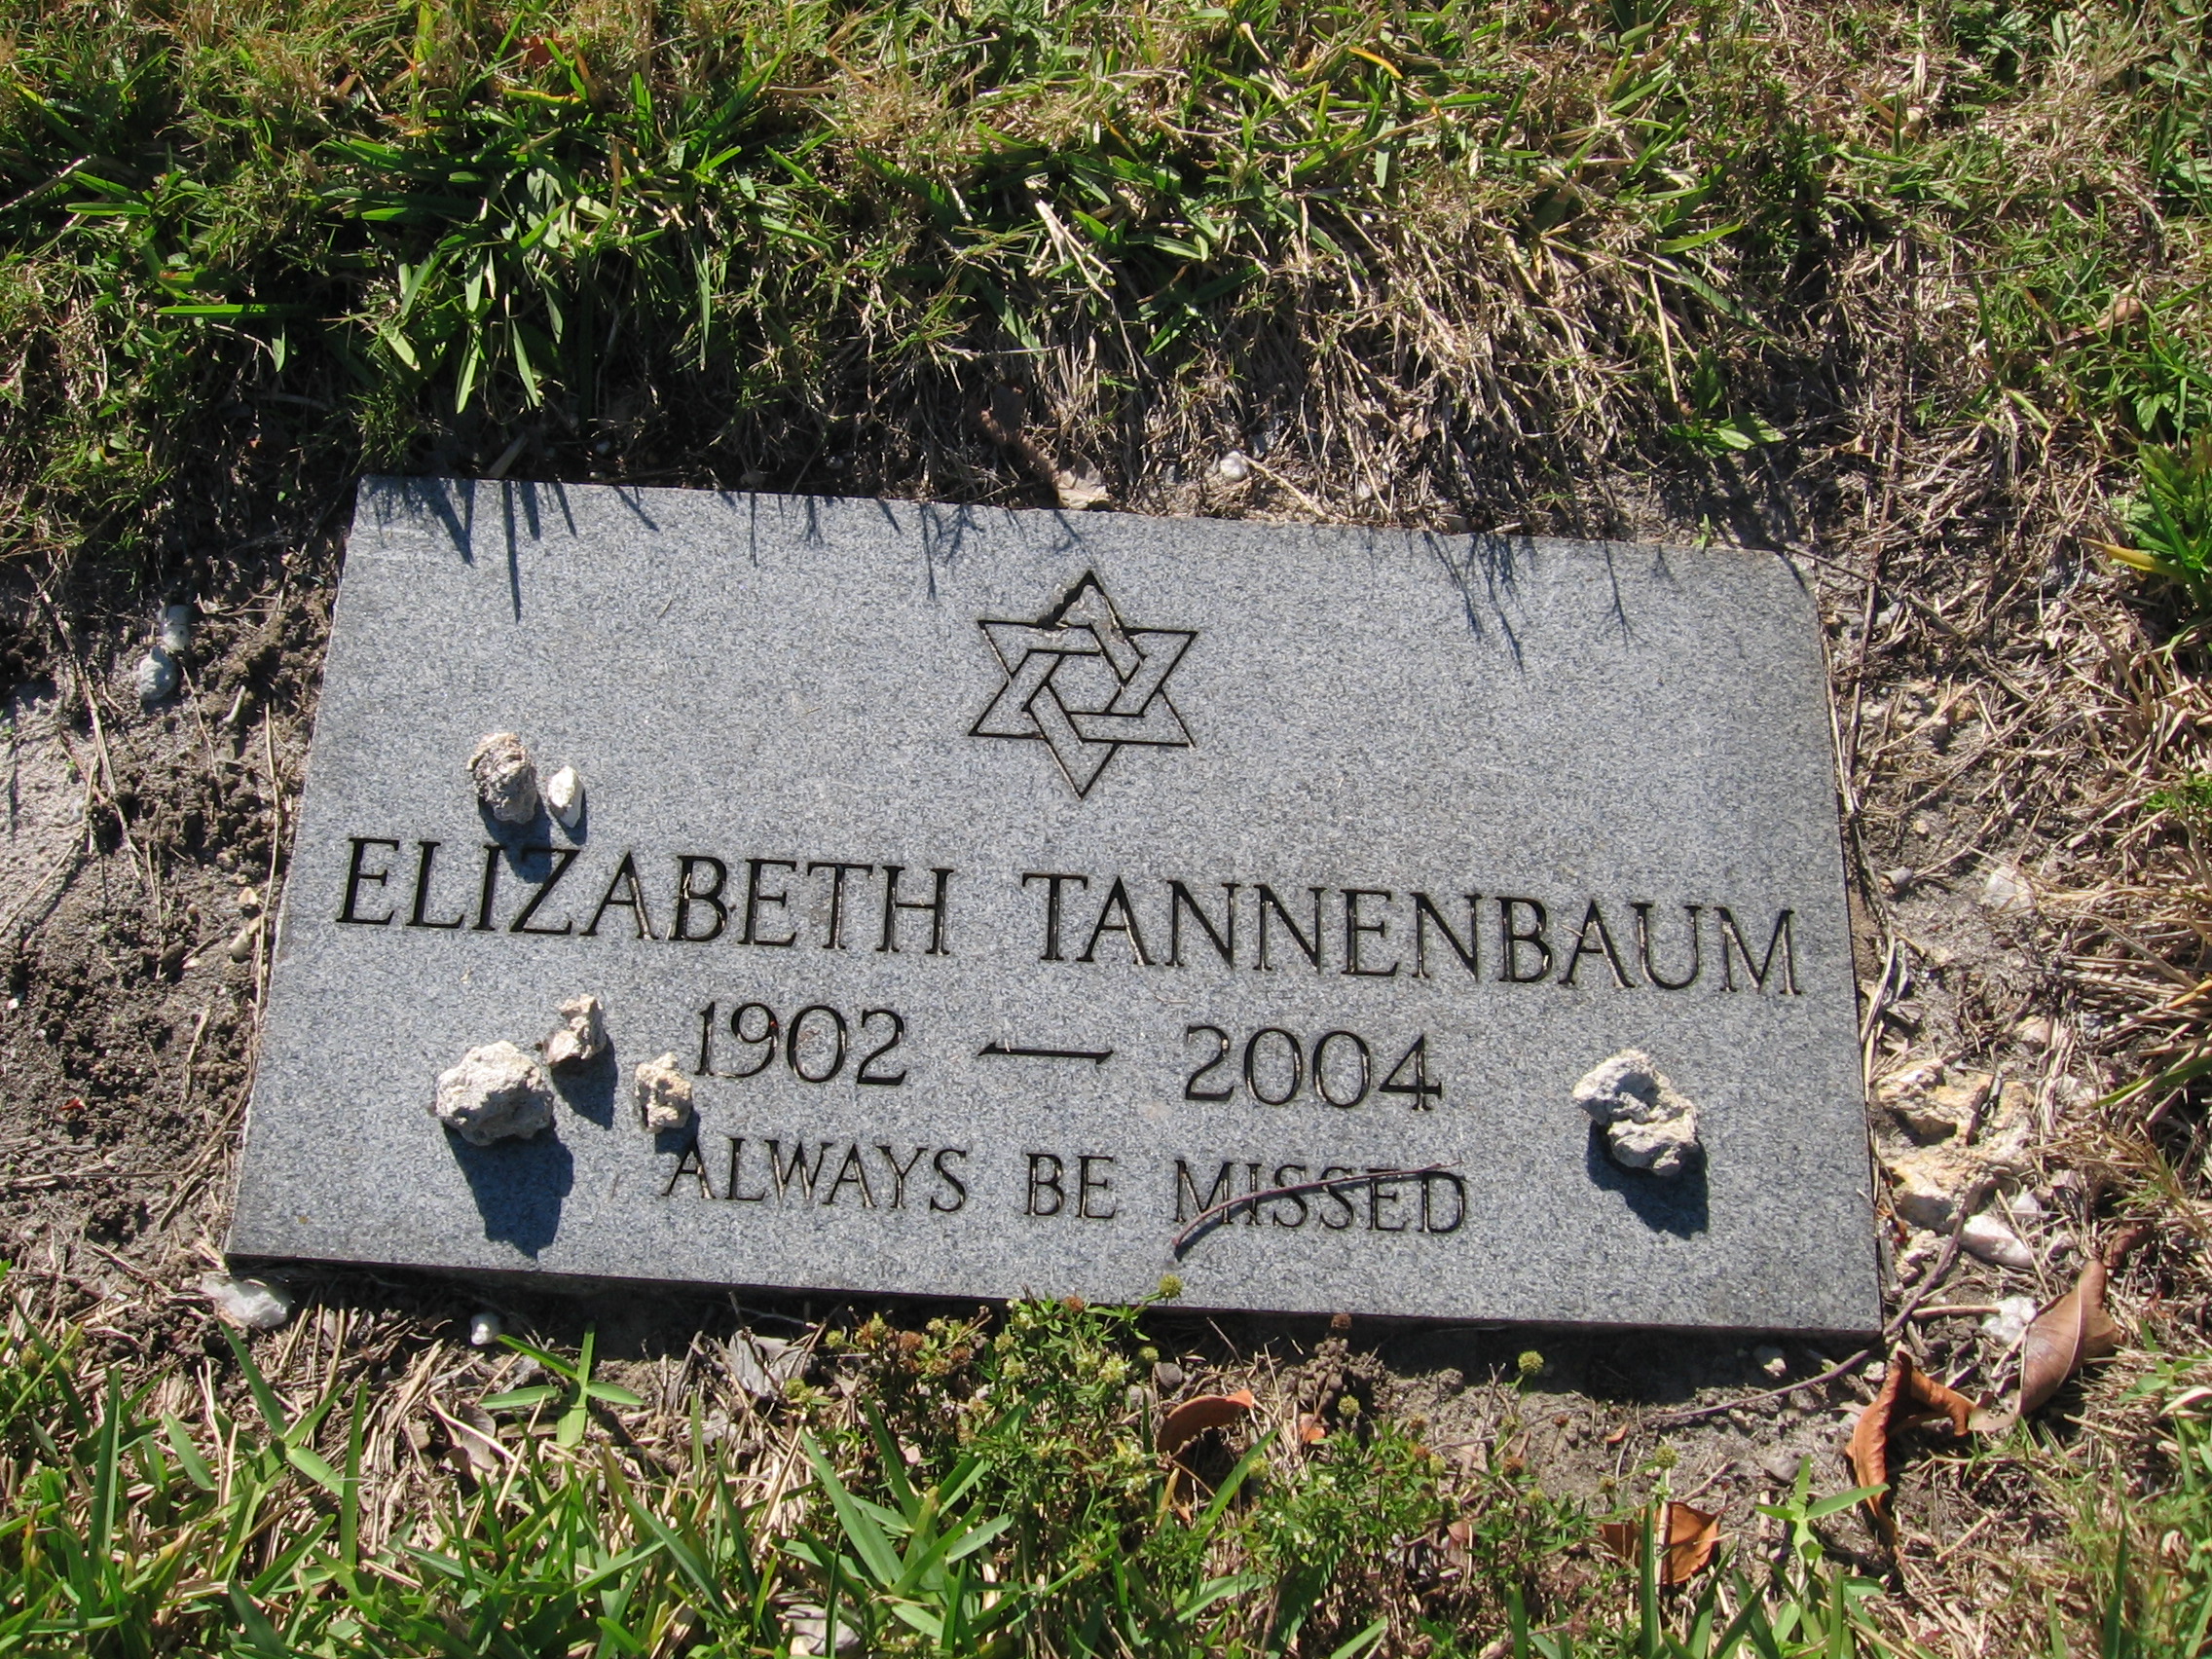 Elizabeth Tannenbaum